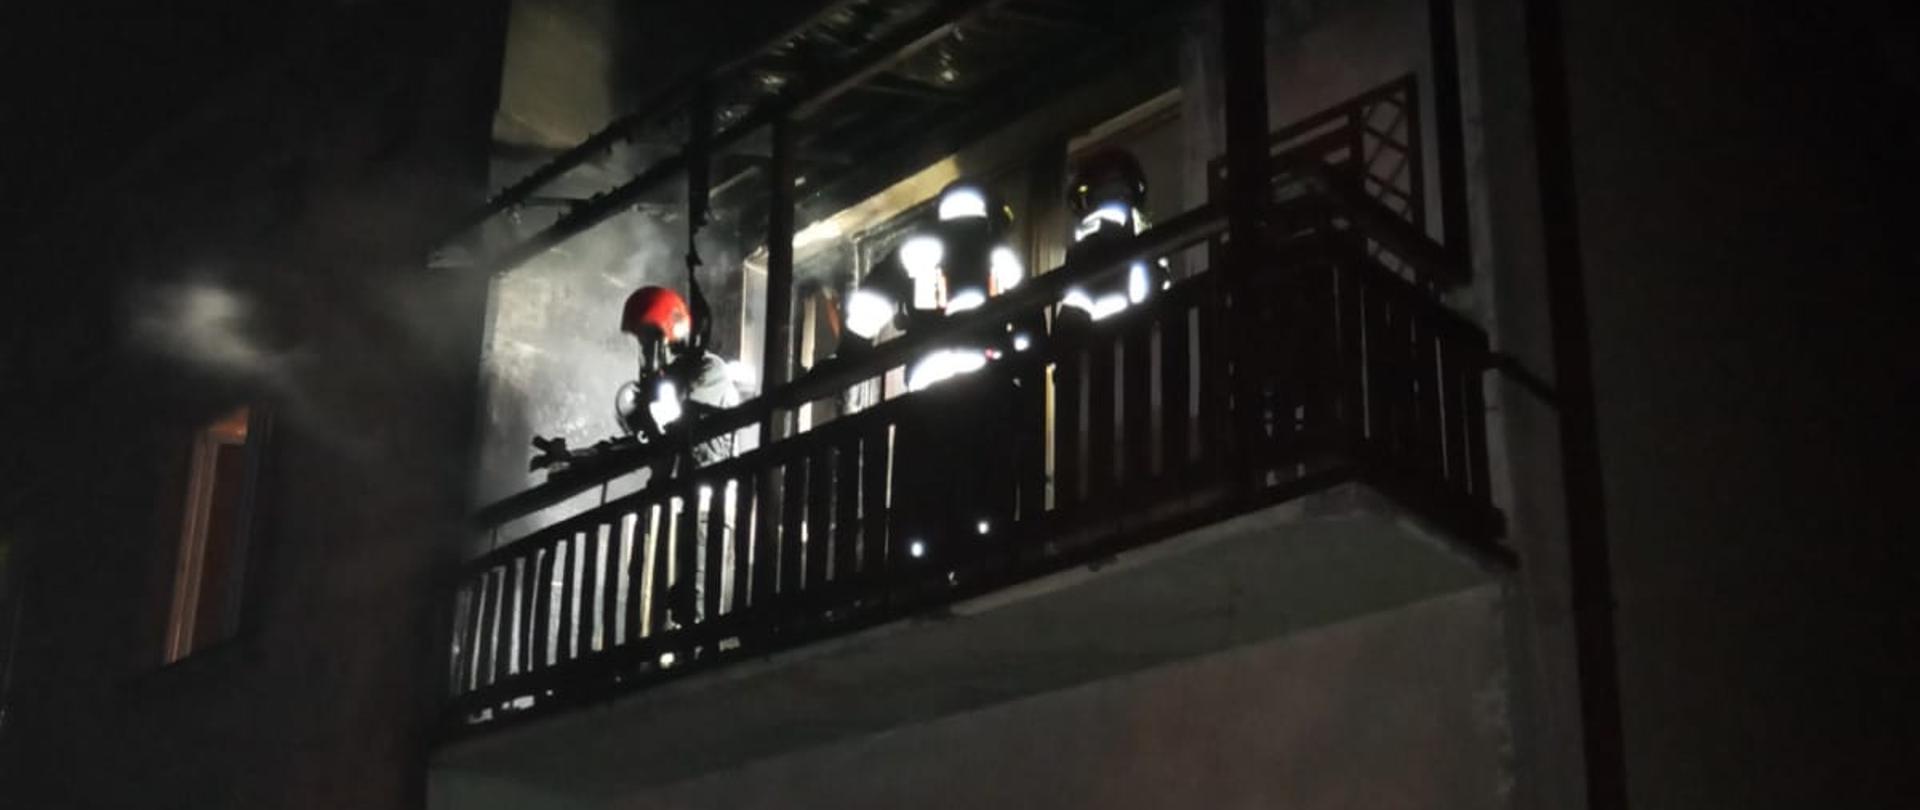 Zdjęcia przedstawia budynek wielorodzinny, na balkonie na pierwszym piętrze widoczni strażacy podczas dogaszania pożaru materiałów zgromadzonych na balkonie.